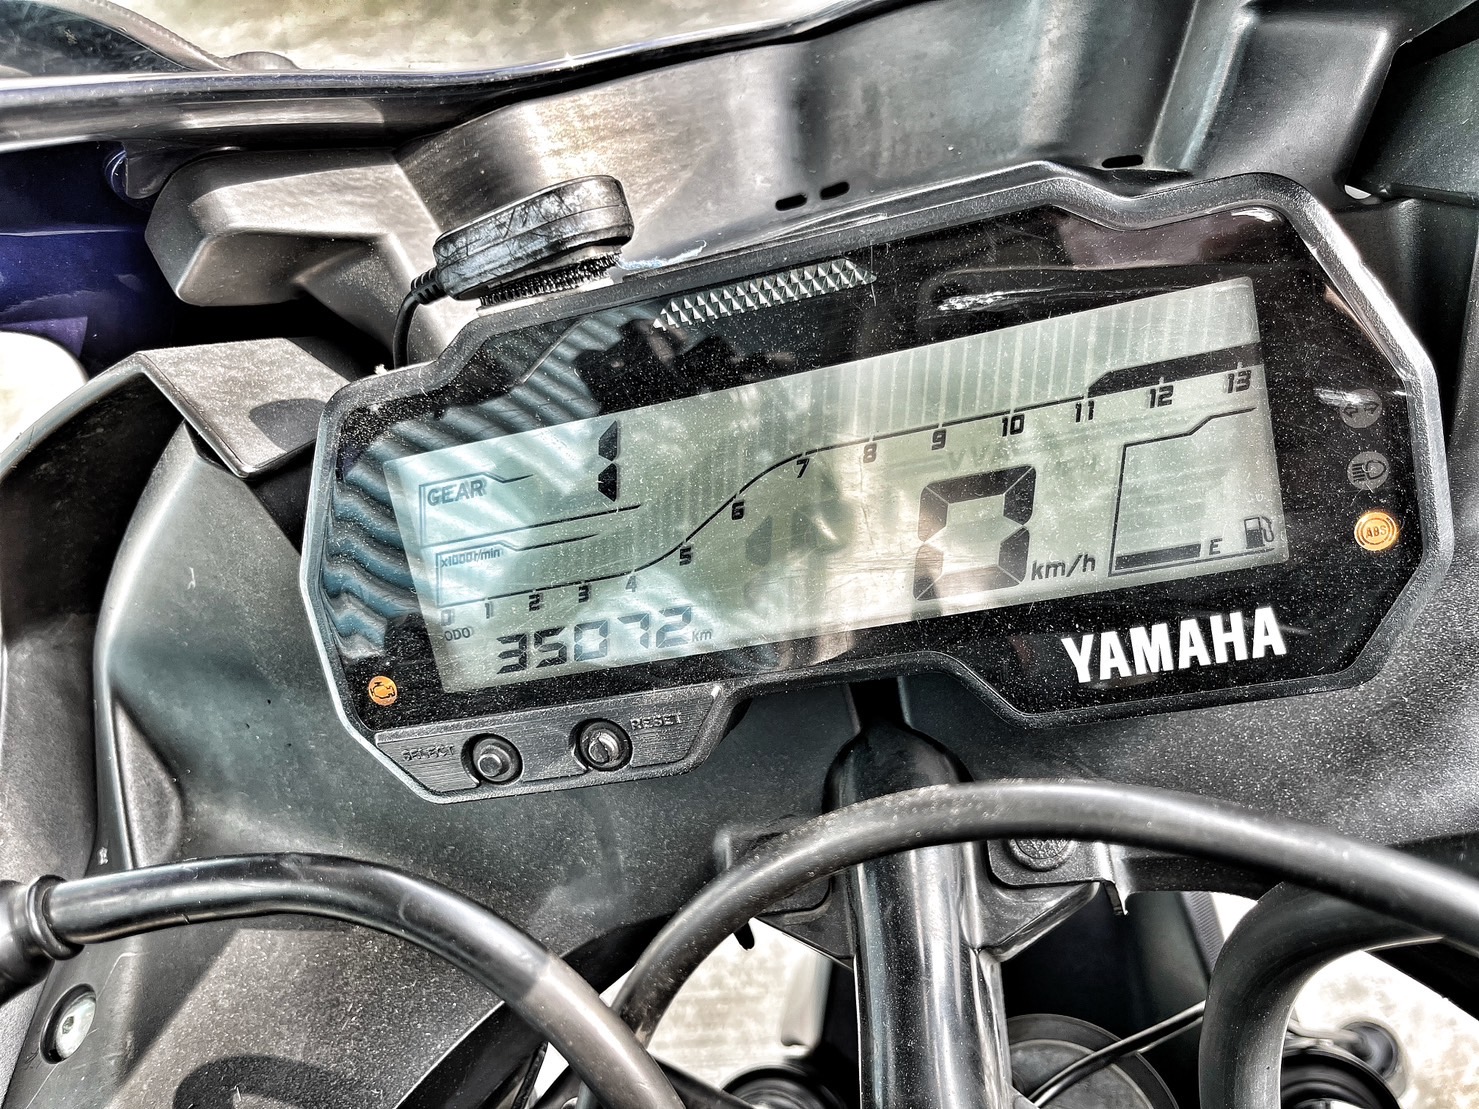 YAMAHA YZF-R15 - 中古/二手車出售中 行車記錄器 基本改裝 一手車 小資族二手重機買賣 | 小資族二手重機買賣